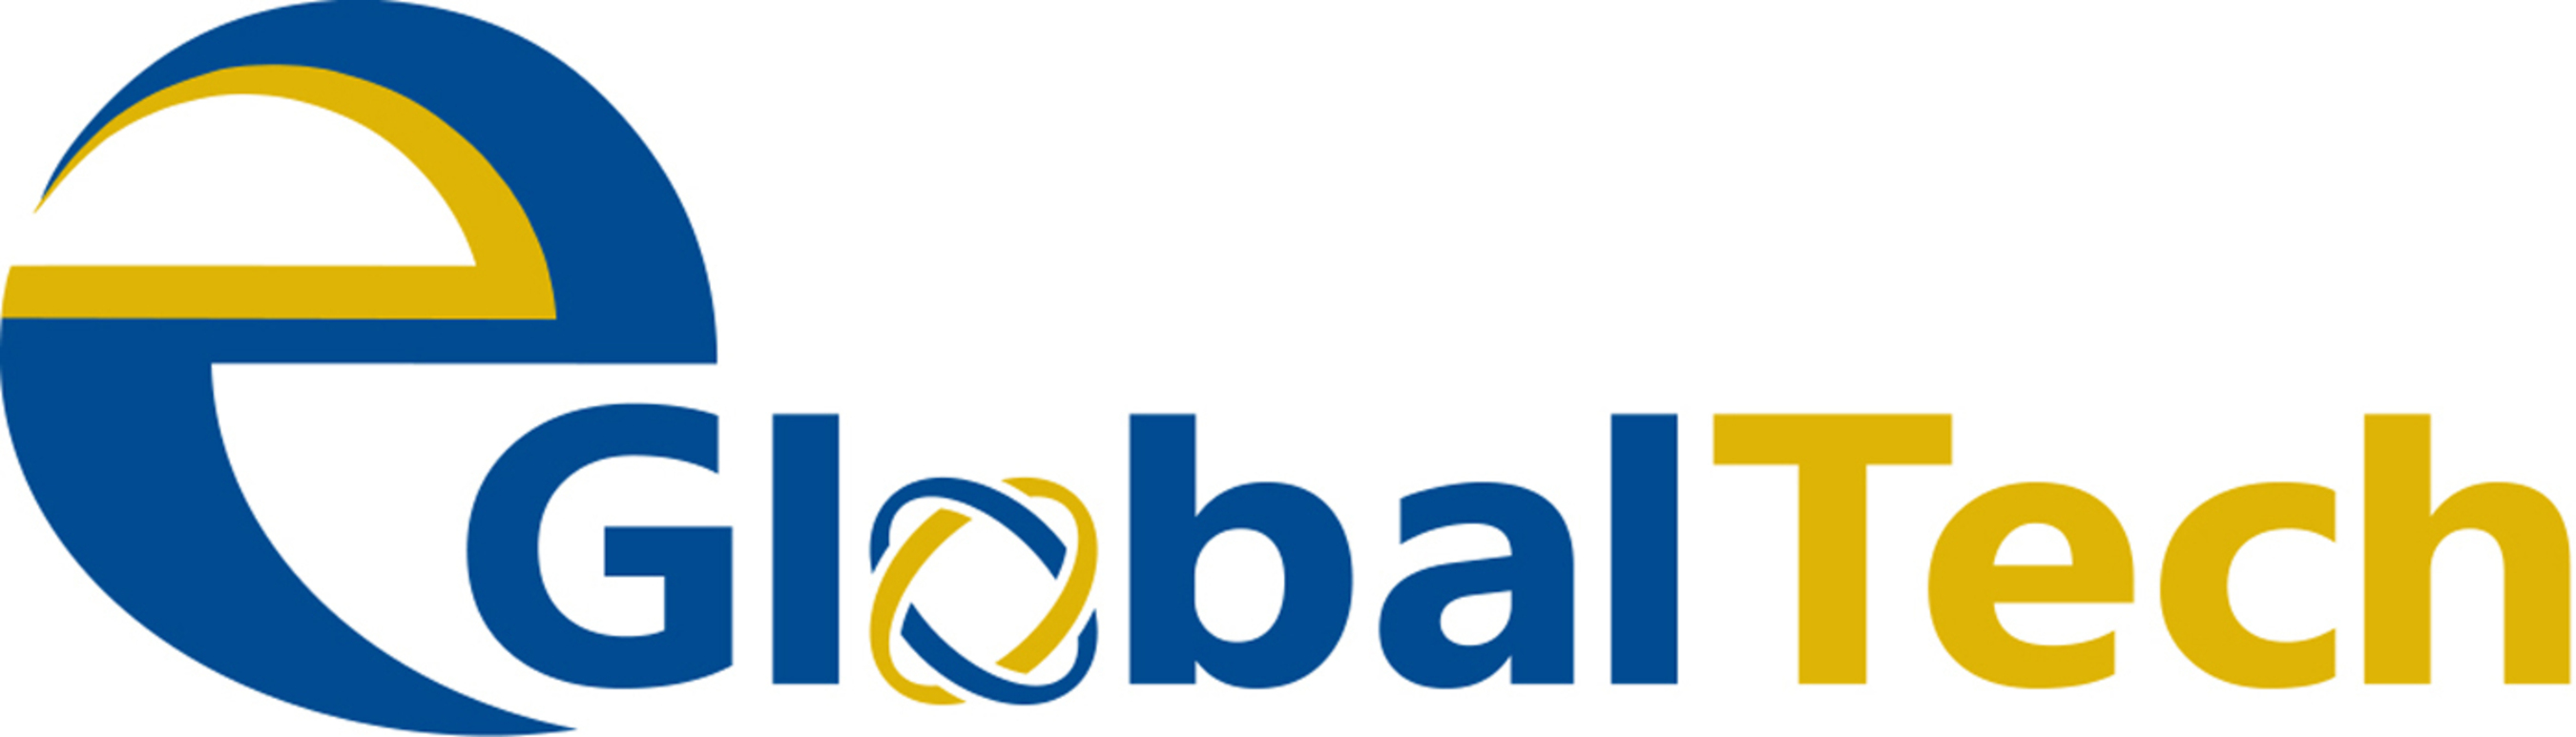 EGLOBALTECH Logo. (PRNewsFoto/eGlobalTech) (PRNewsFoto/EGLOBALTECH)